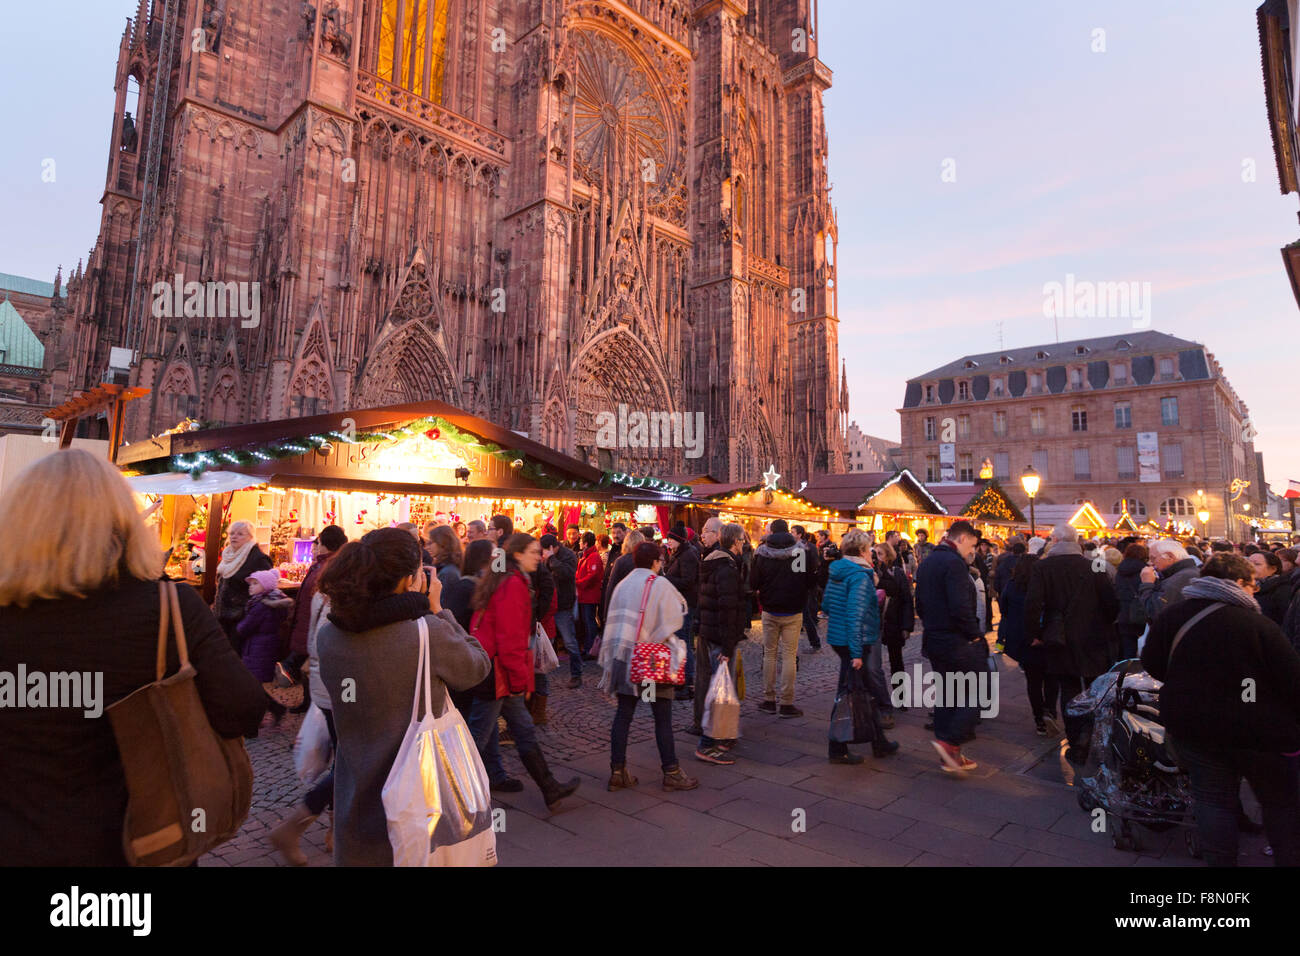 Leute einkaufen an Marktständen, Straßburg Weihnachtsmarkt und Kathedrale von Straßburg, Strasbourg, Elsass Frankreich Europa Stockfoto